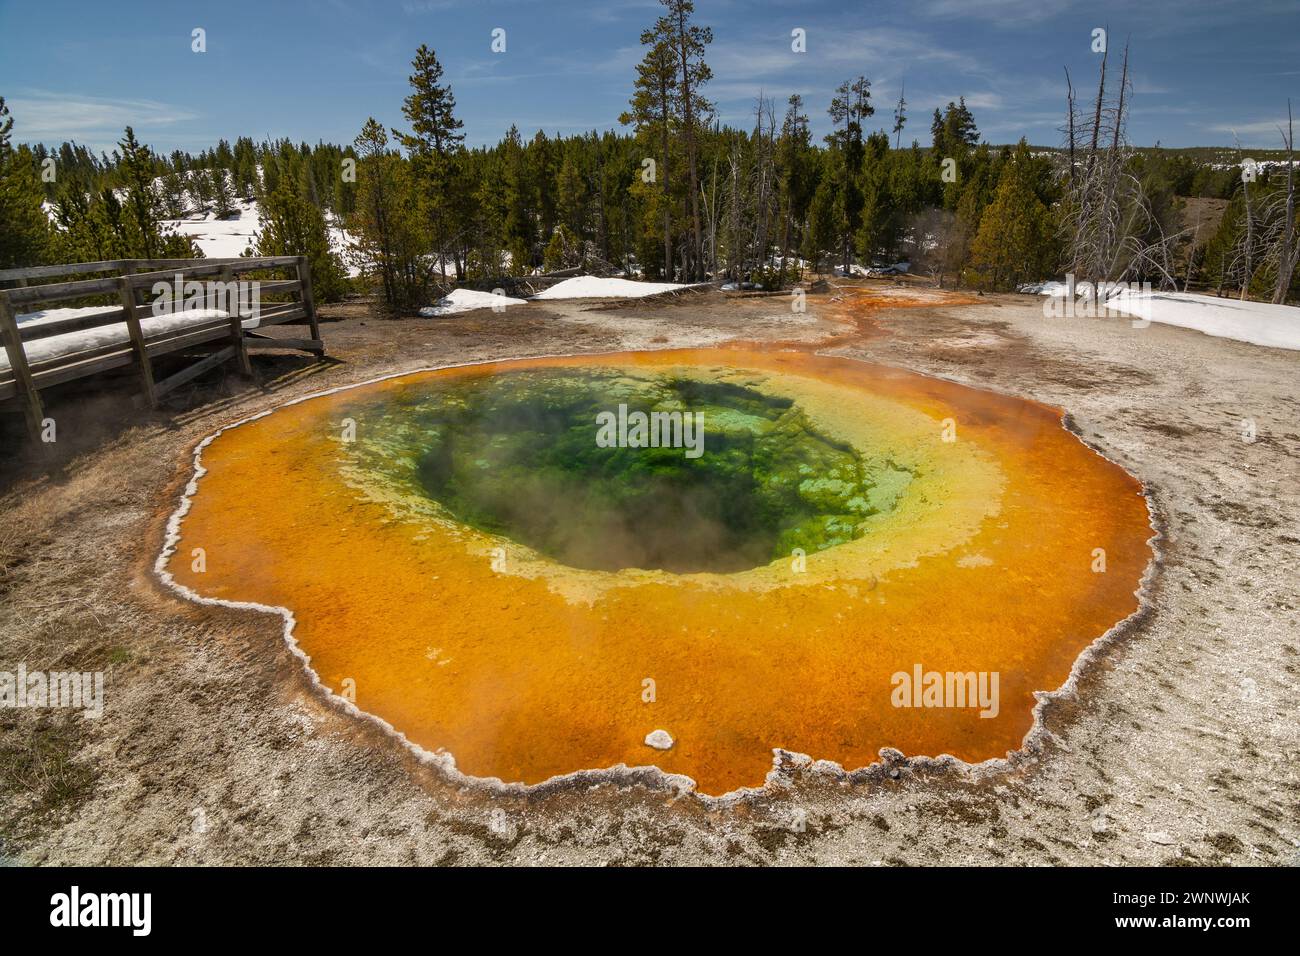 L'immagine mostra i colori vivaci di una sorgente termale calda con suggestivi depositi minerali verdi e arancioni intorno ai bordi Foto Stock